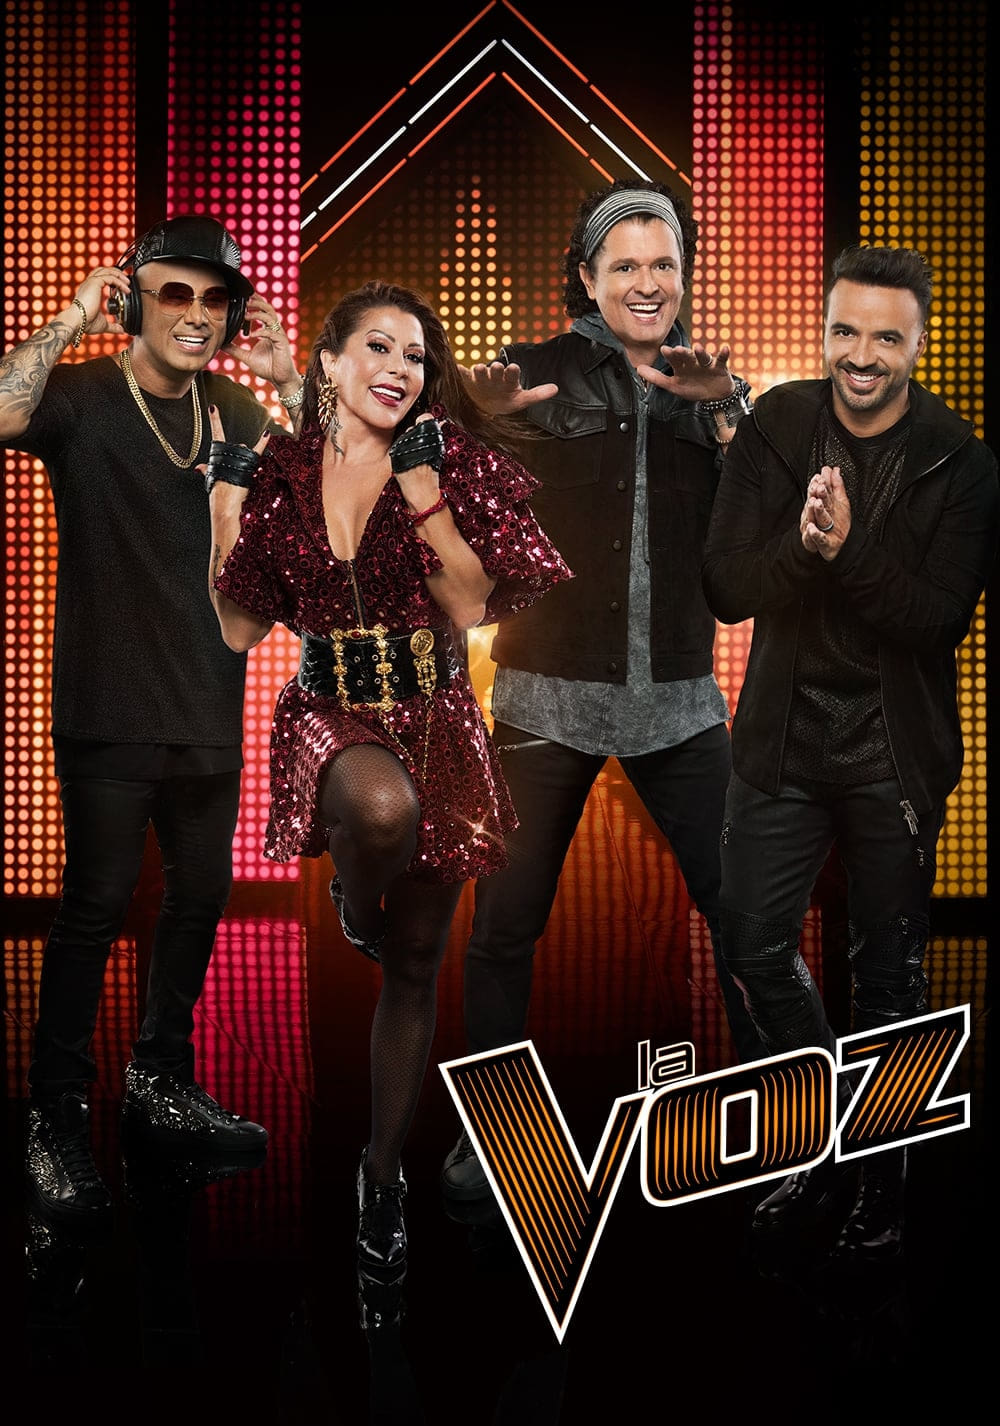 La Voz TV Shows About Singing